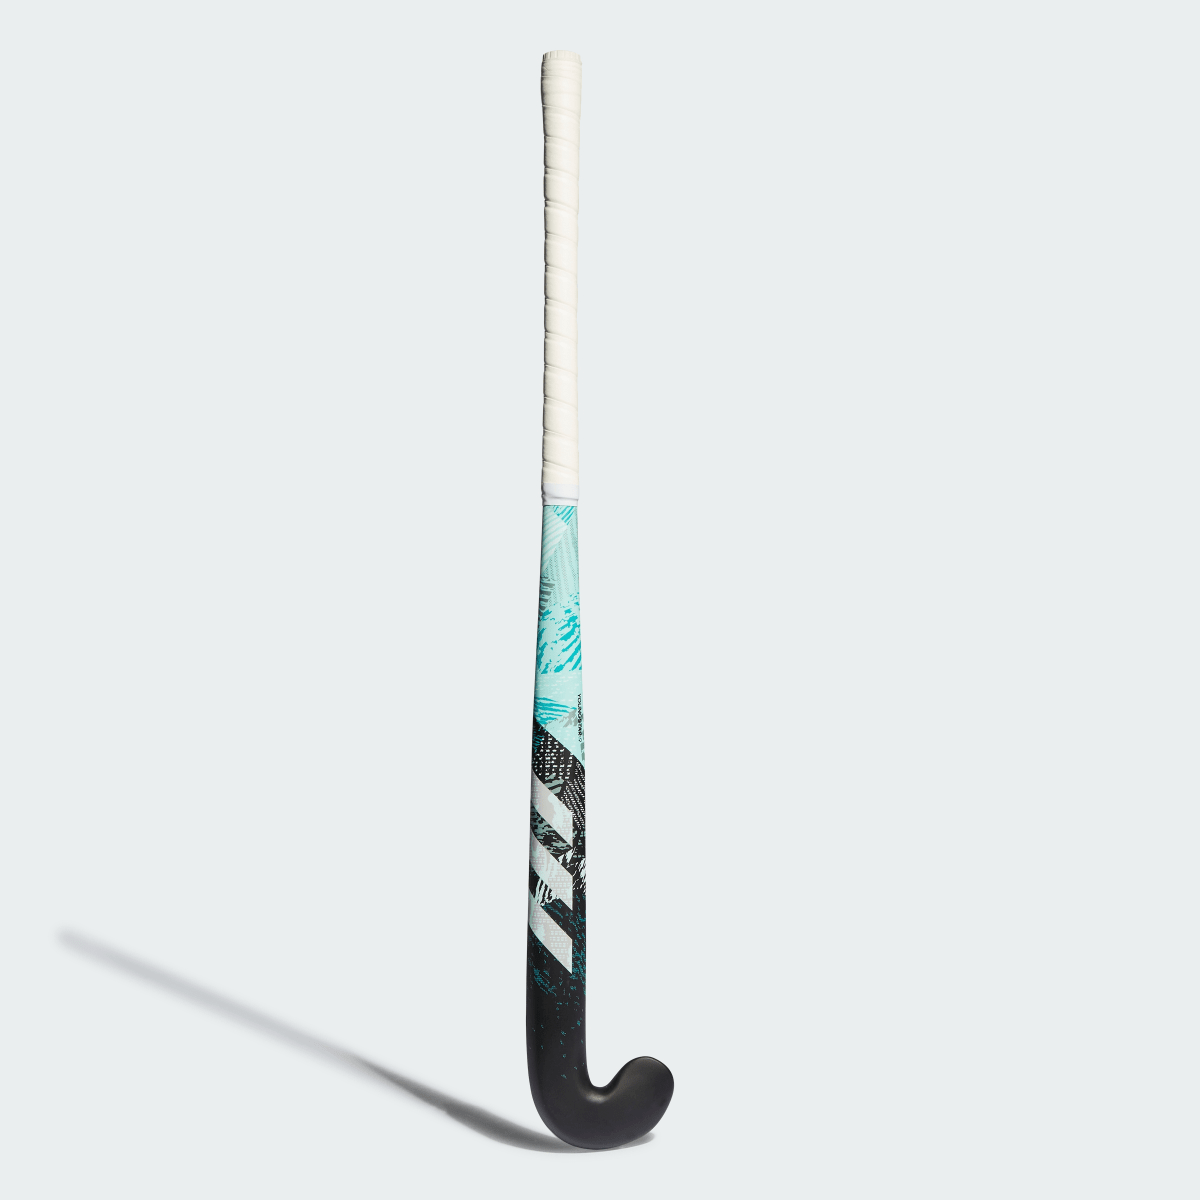 Adidas Stick de hockey hierba Youngstar.9 61 cm. 2